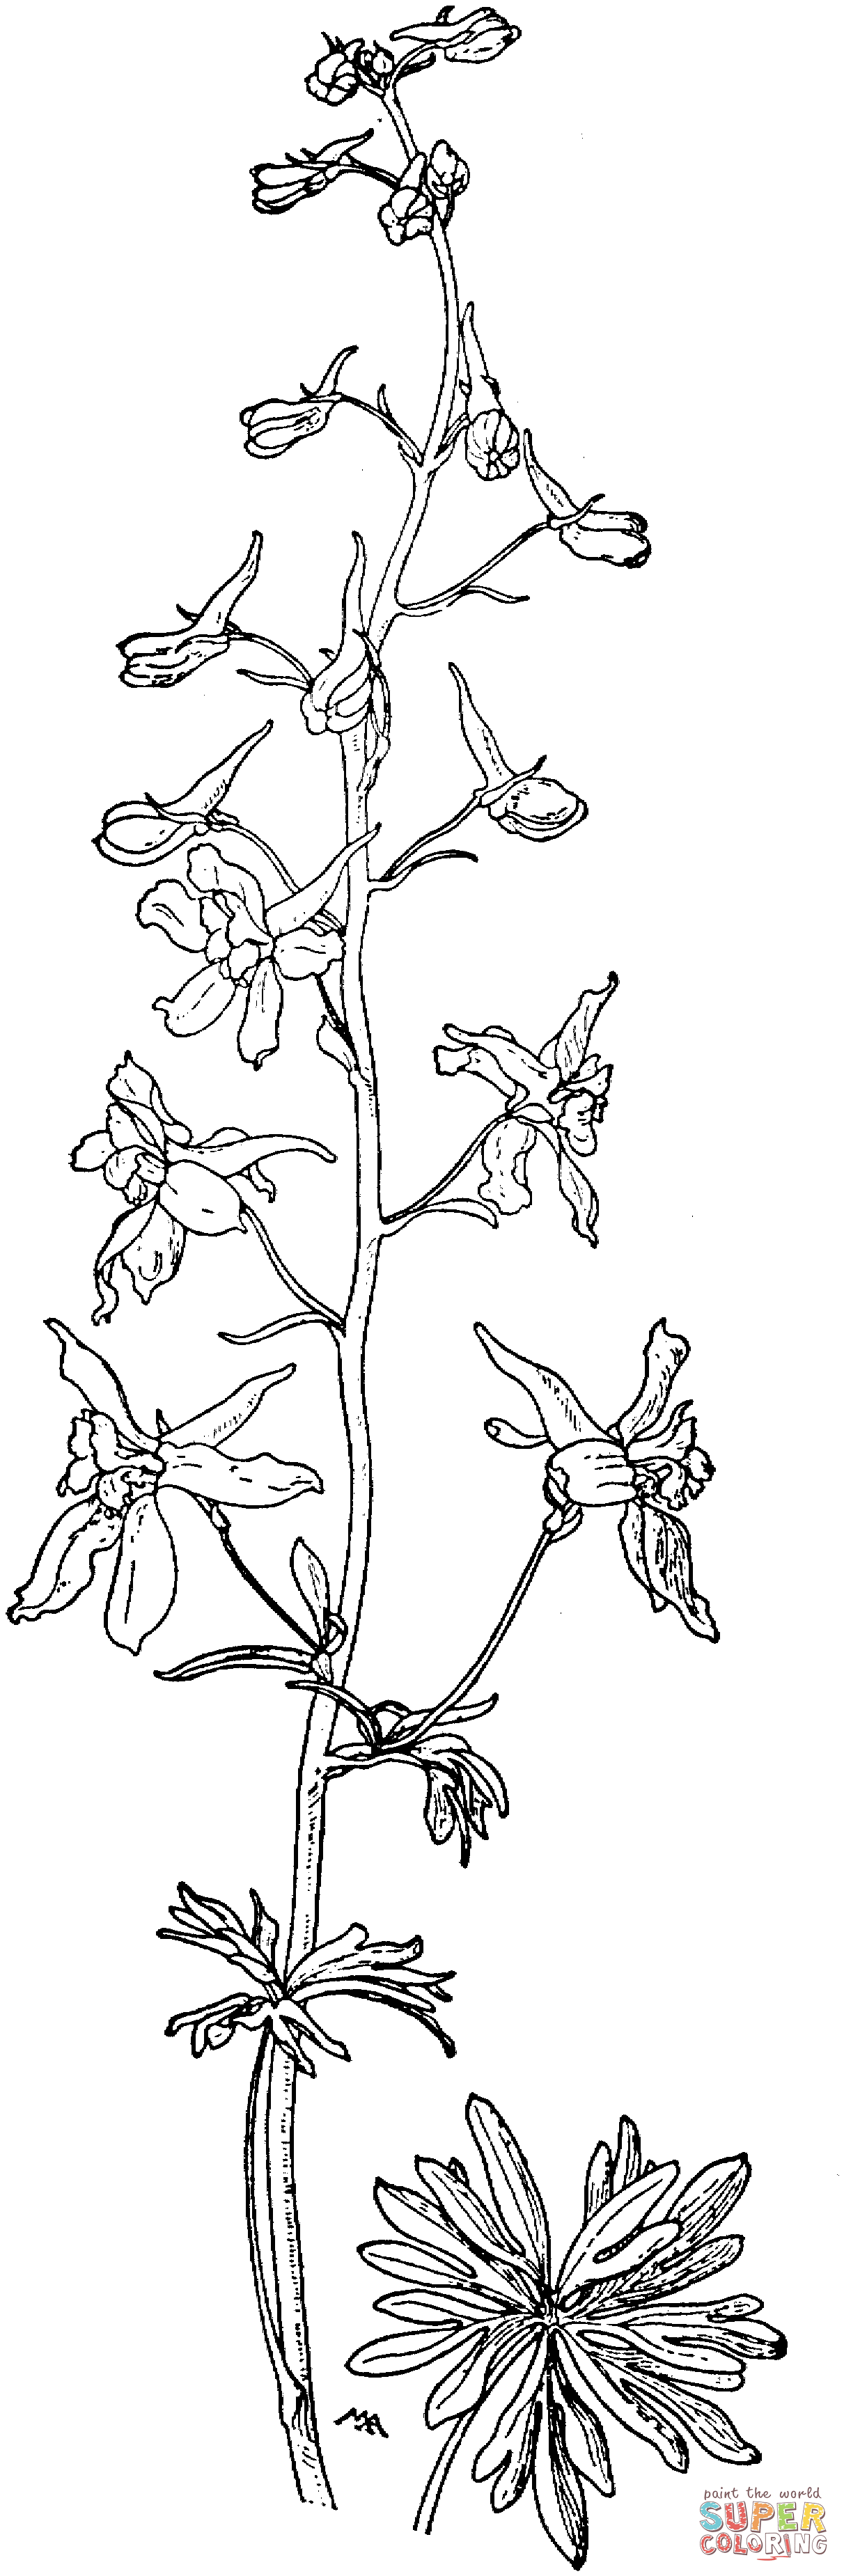 Delphinium Bicolor ou Little Larkspur ou Low Larkspur de Larkspur